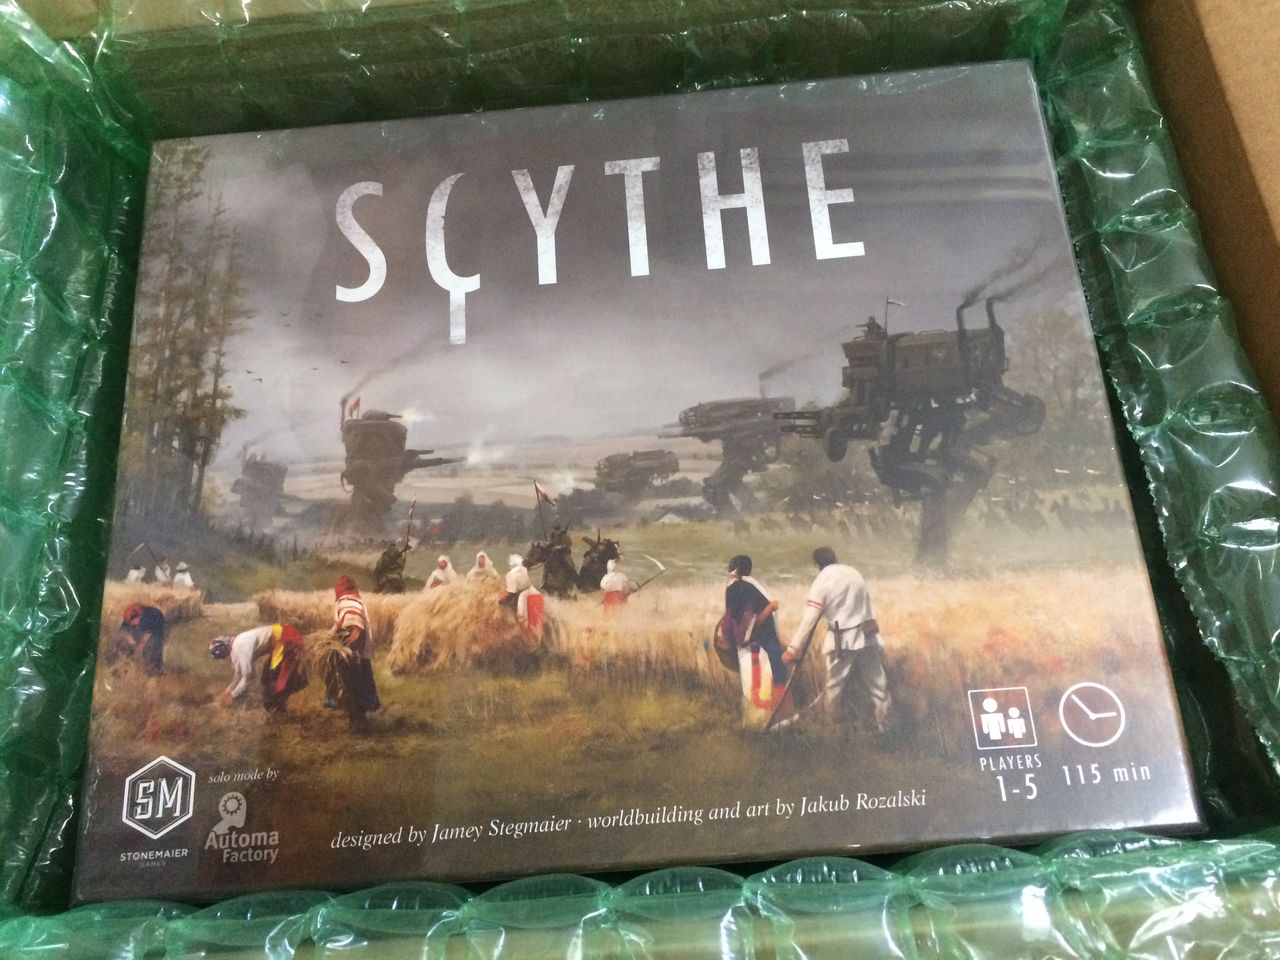 Scythe 大鎌戦役 が素敵なボードゲームだったので いっしょに遊んでほしい話 キャッチーでいてください